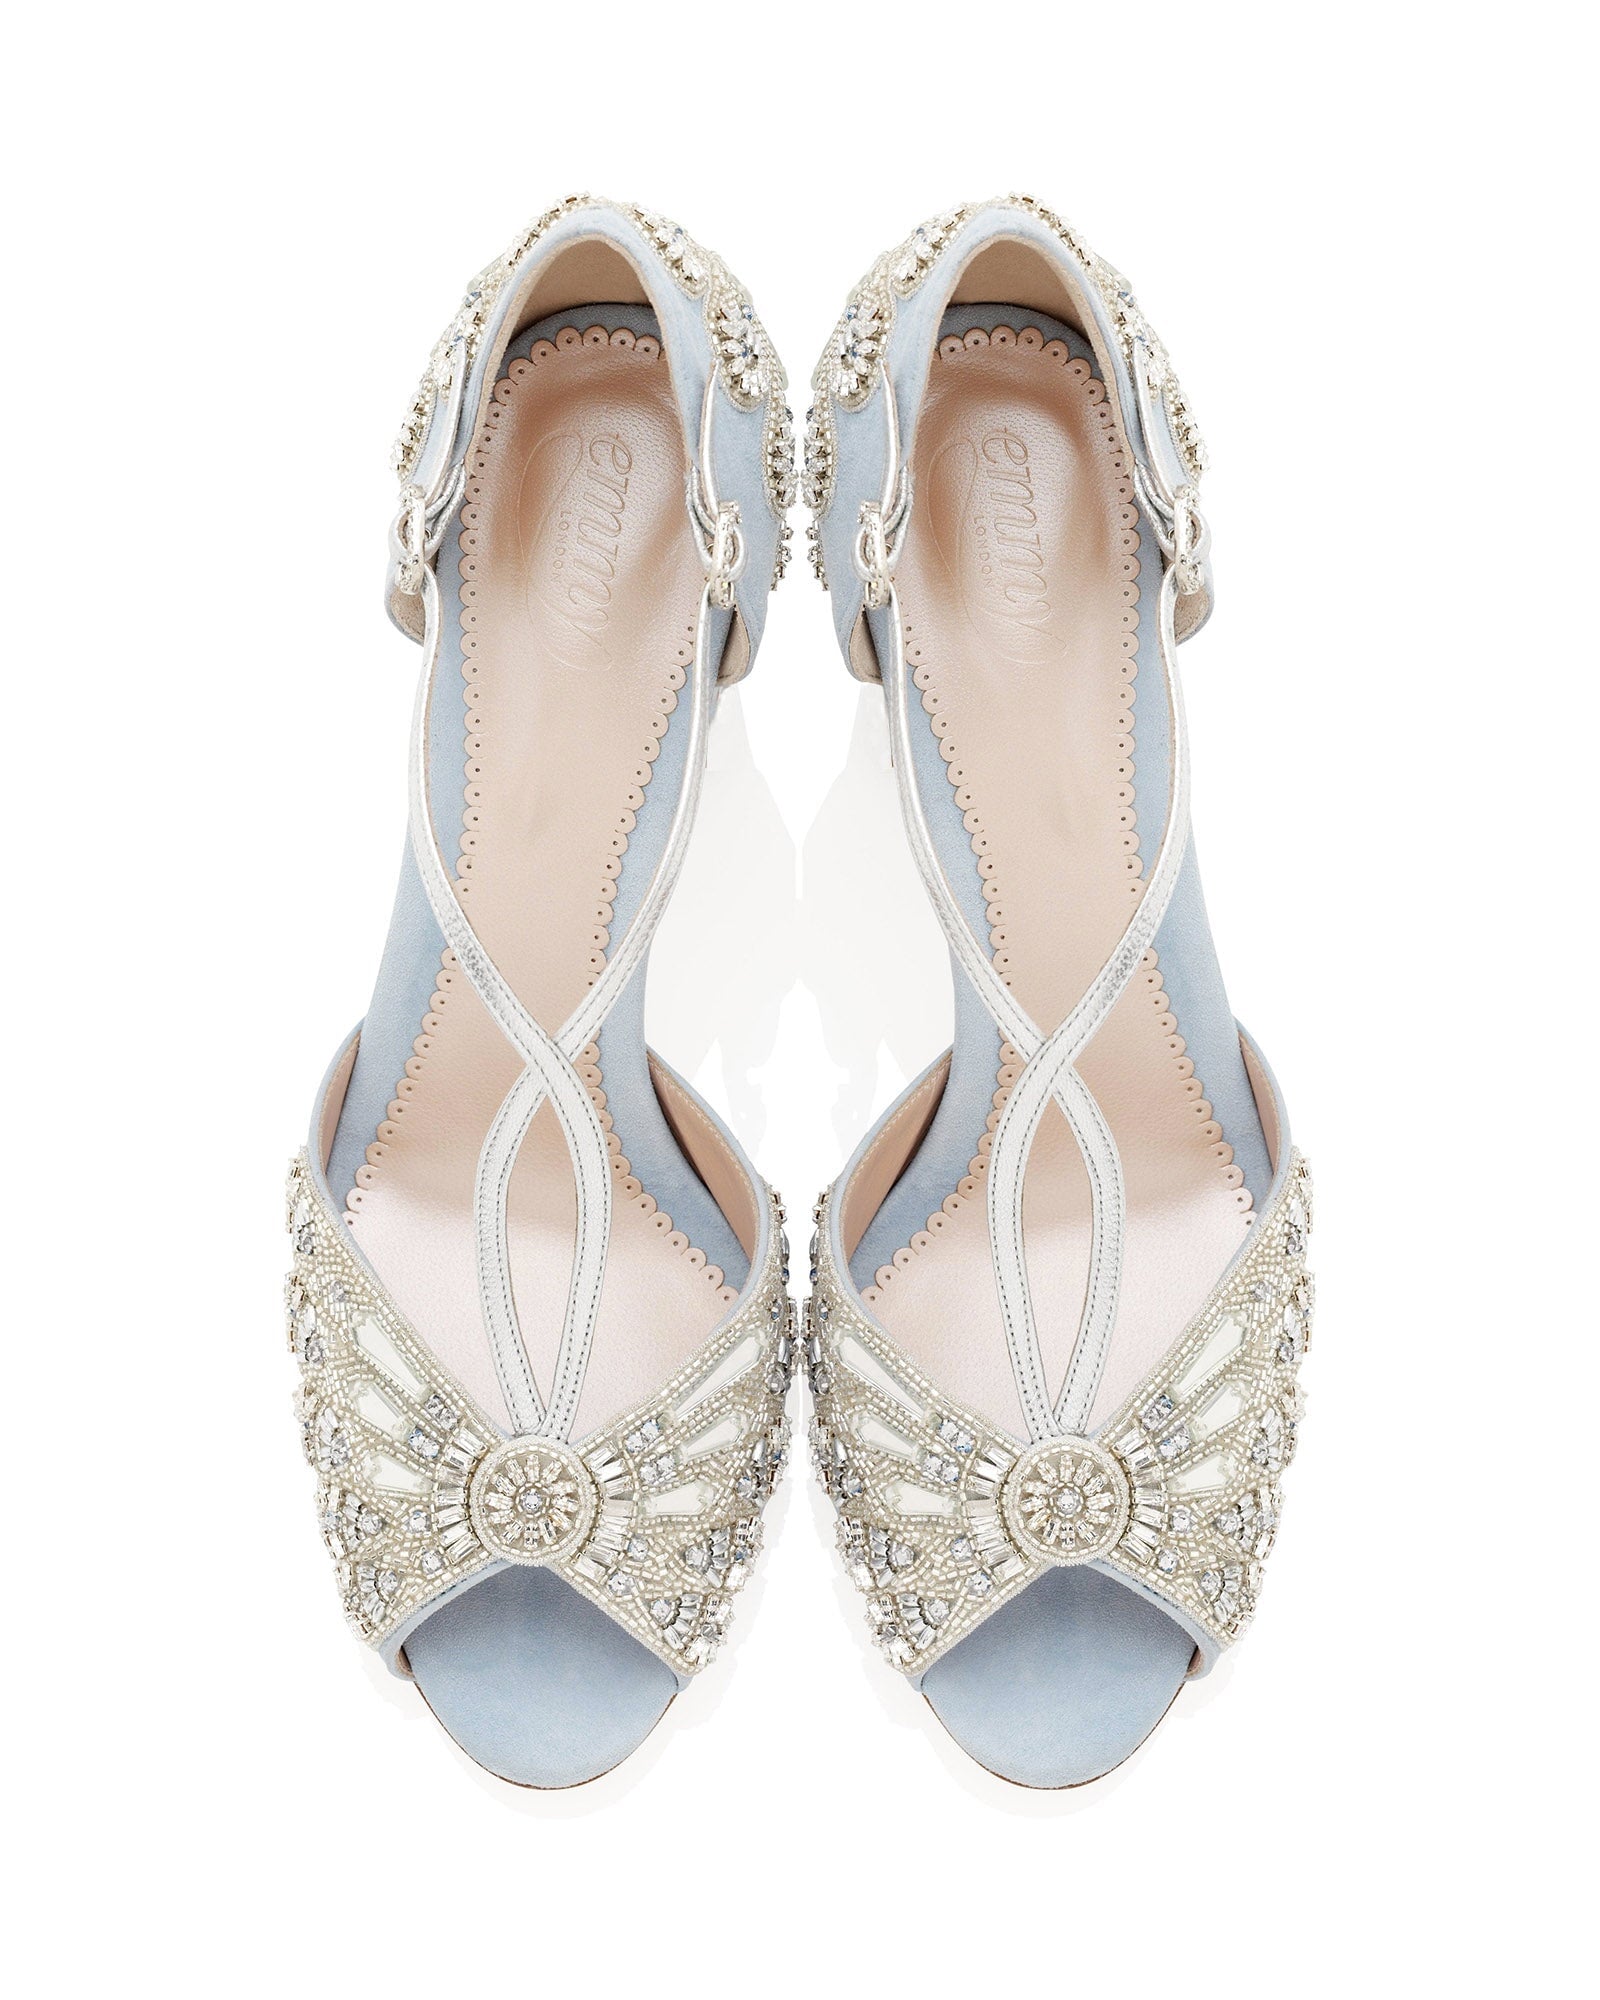 Bluebell Bridal Shoe Blue Embellished Wedding Shoes  image